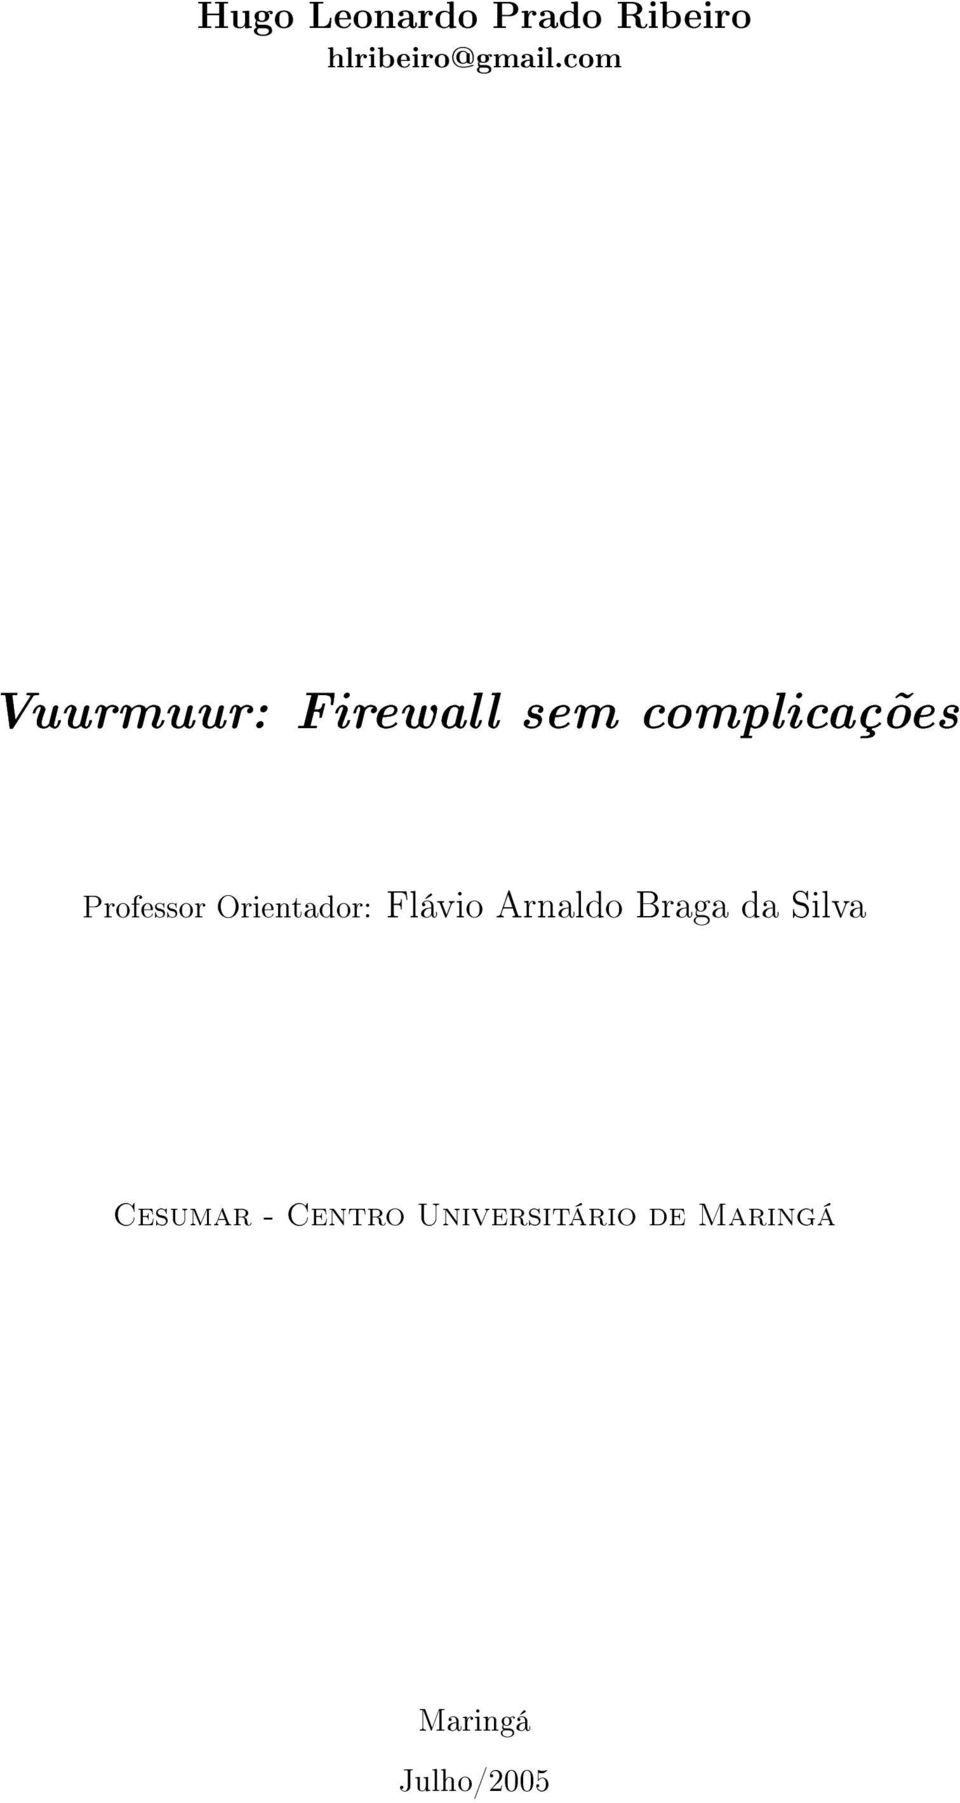 Professor Orientador: Flávio Arnaldo Braga da